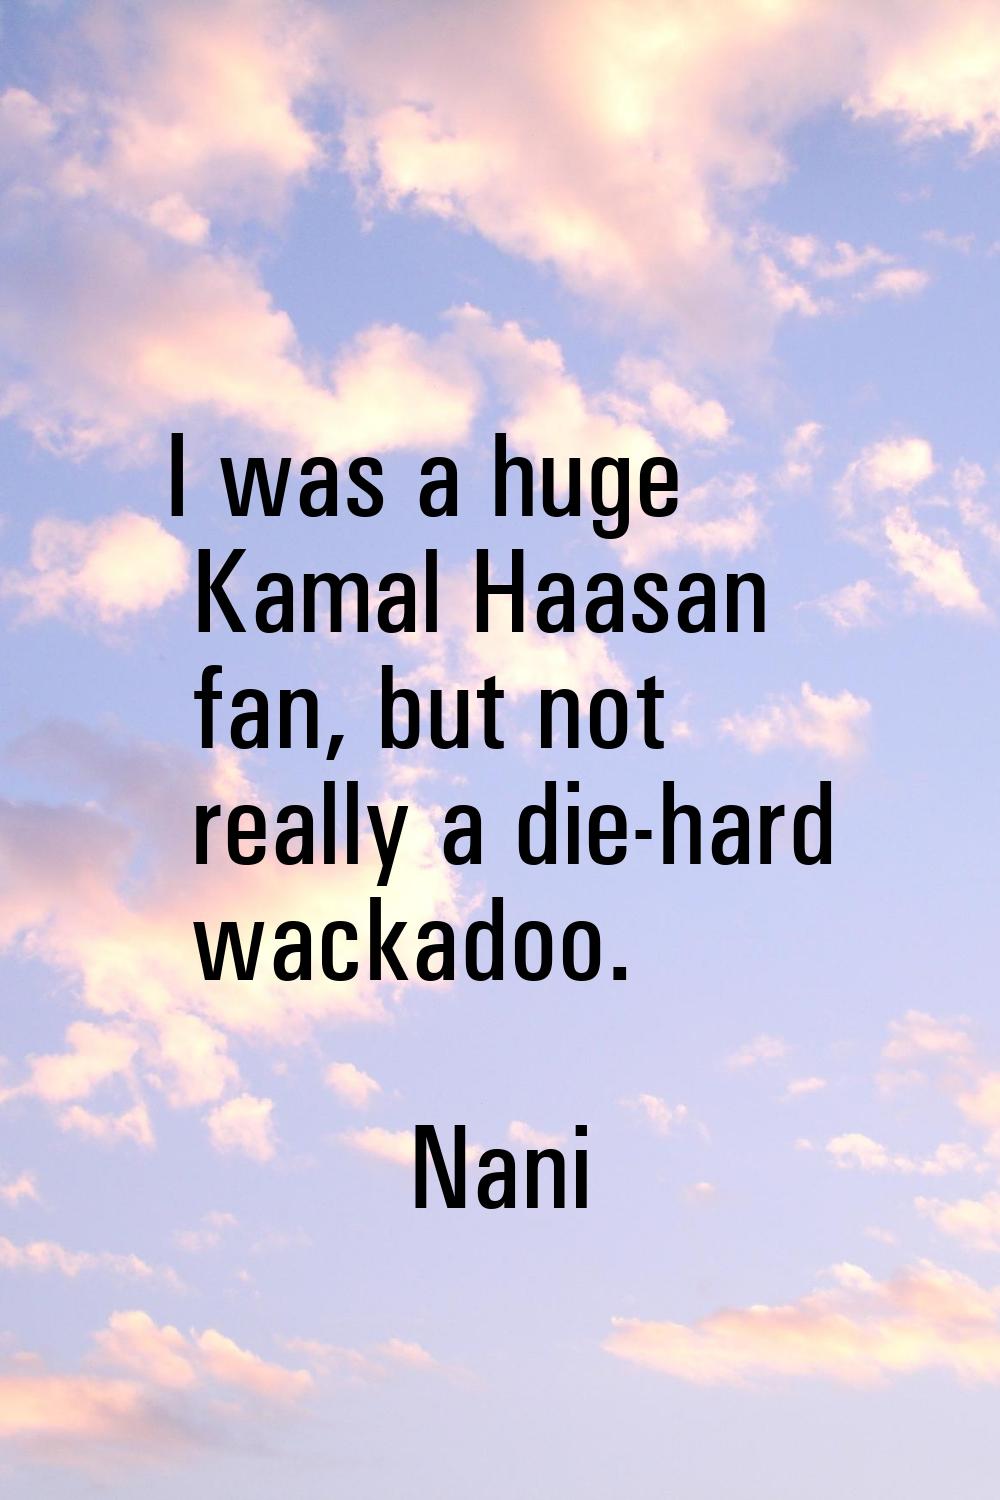 I was a huge Kamal Haasan fan, but not really a die-hard wackadoo.